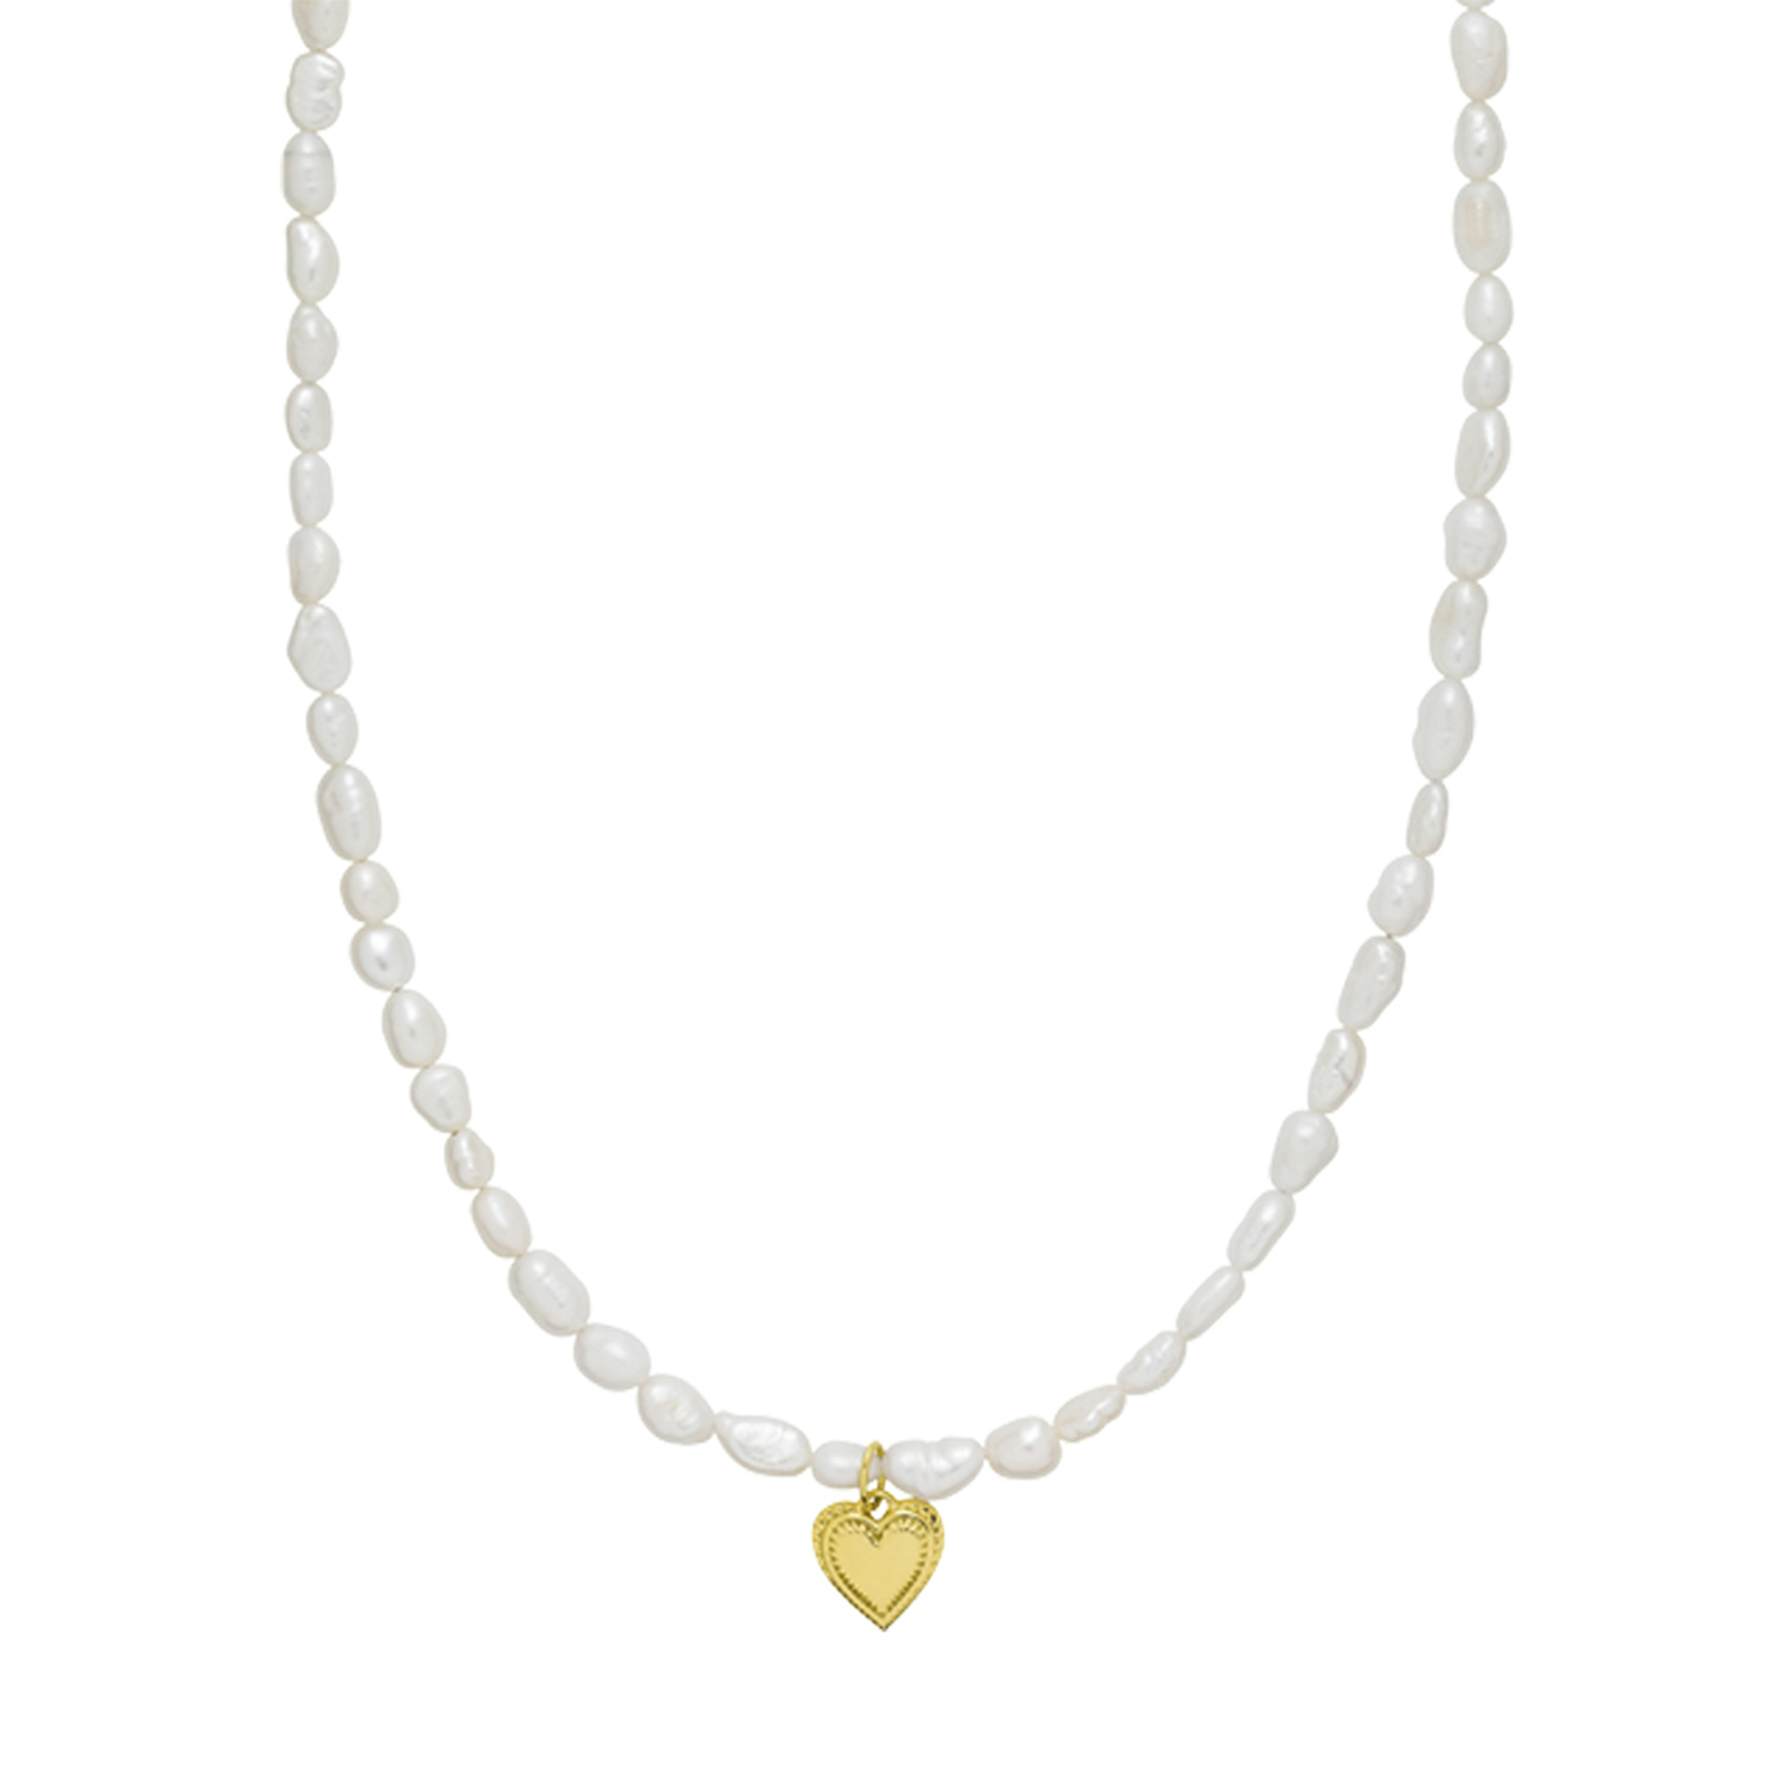 Anne-Sofie Krab x Sistie Heart Necklace fra Sistie i Forgyldt-Sølv Sterling 925